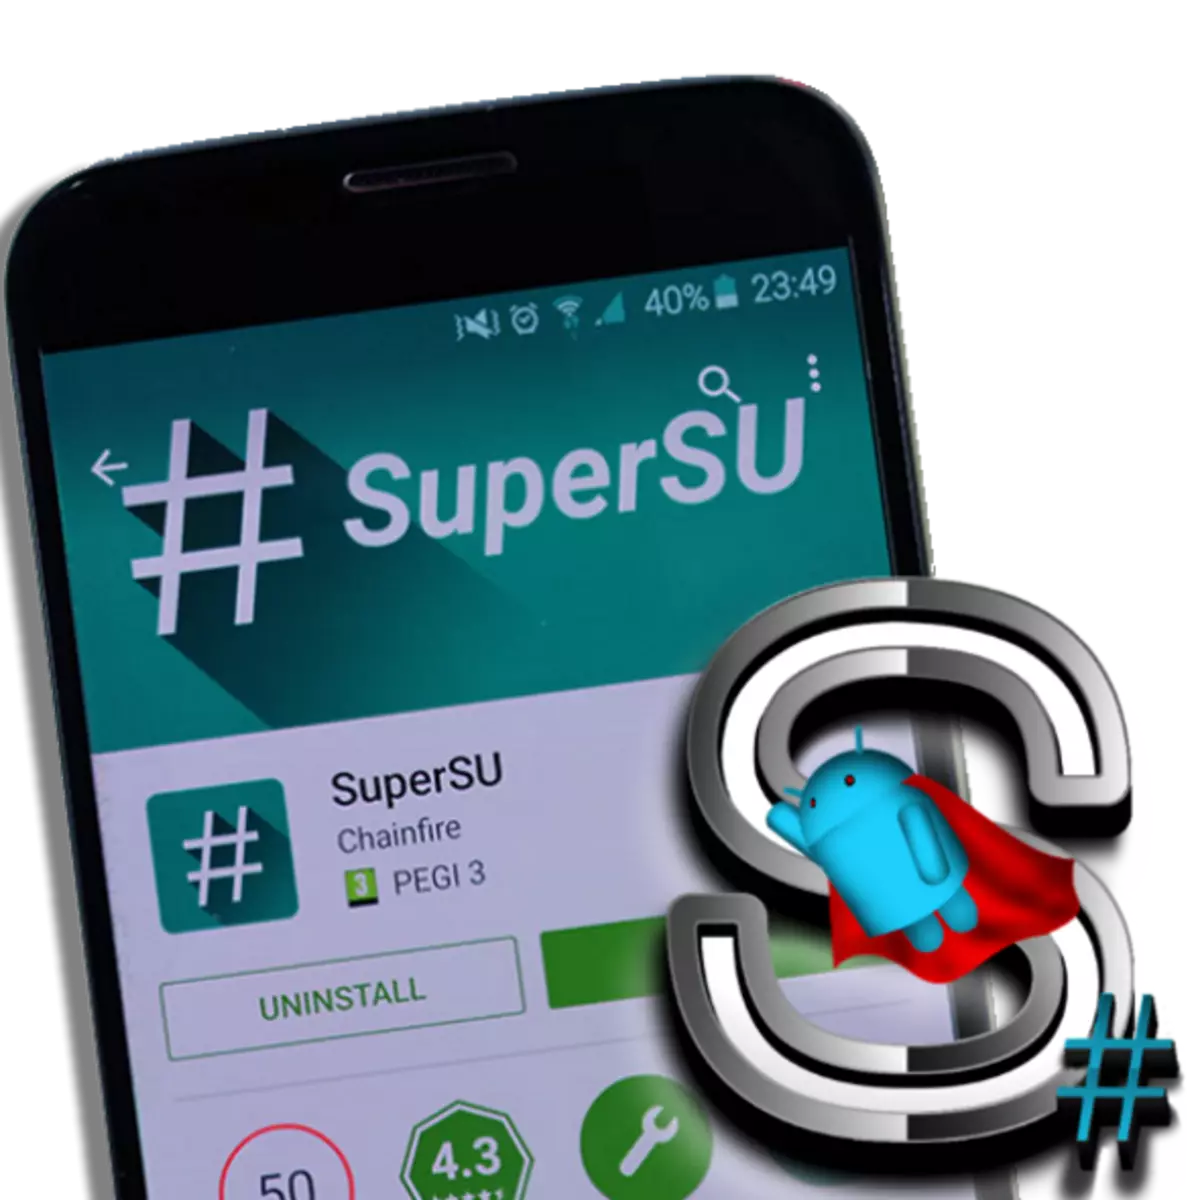 Nola lortu root eskubideak Android-ekin Supersu-rekin